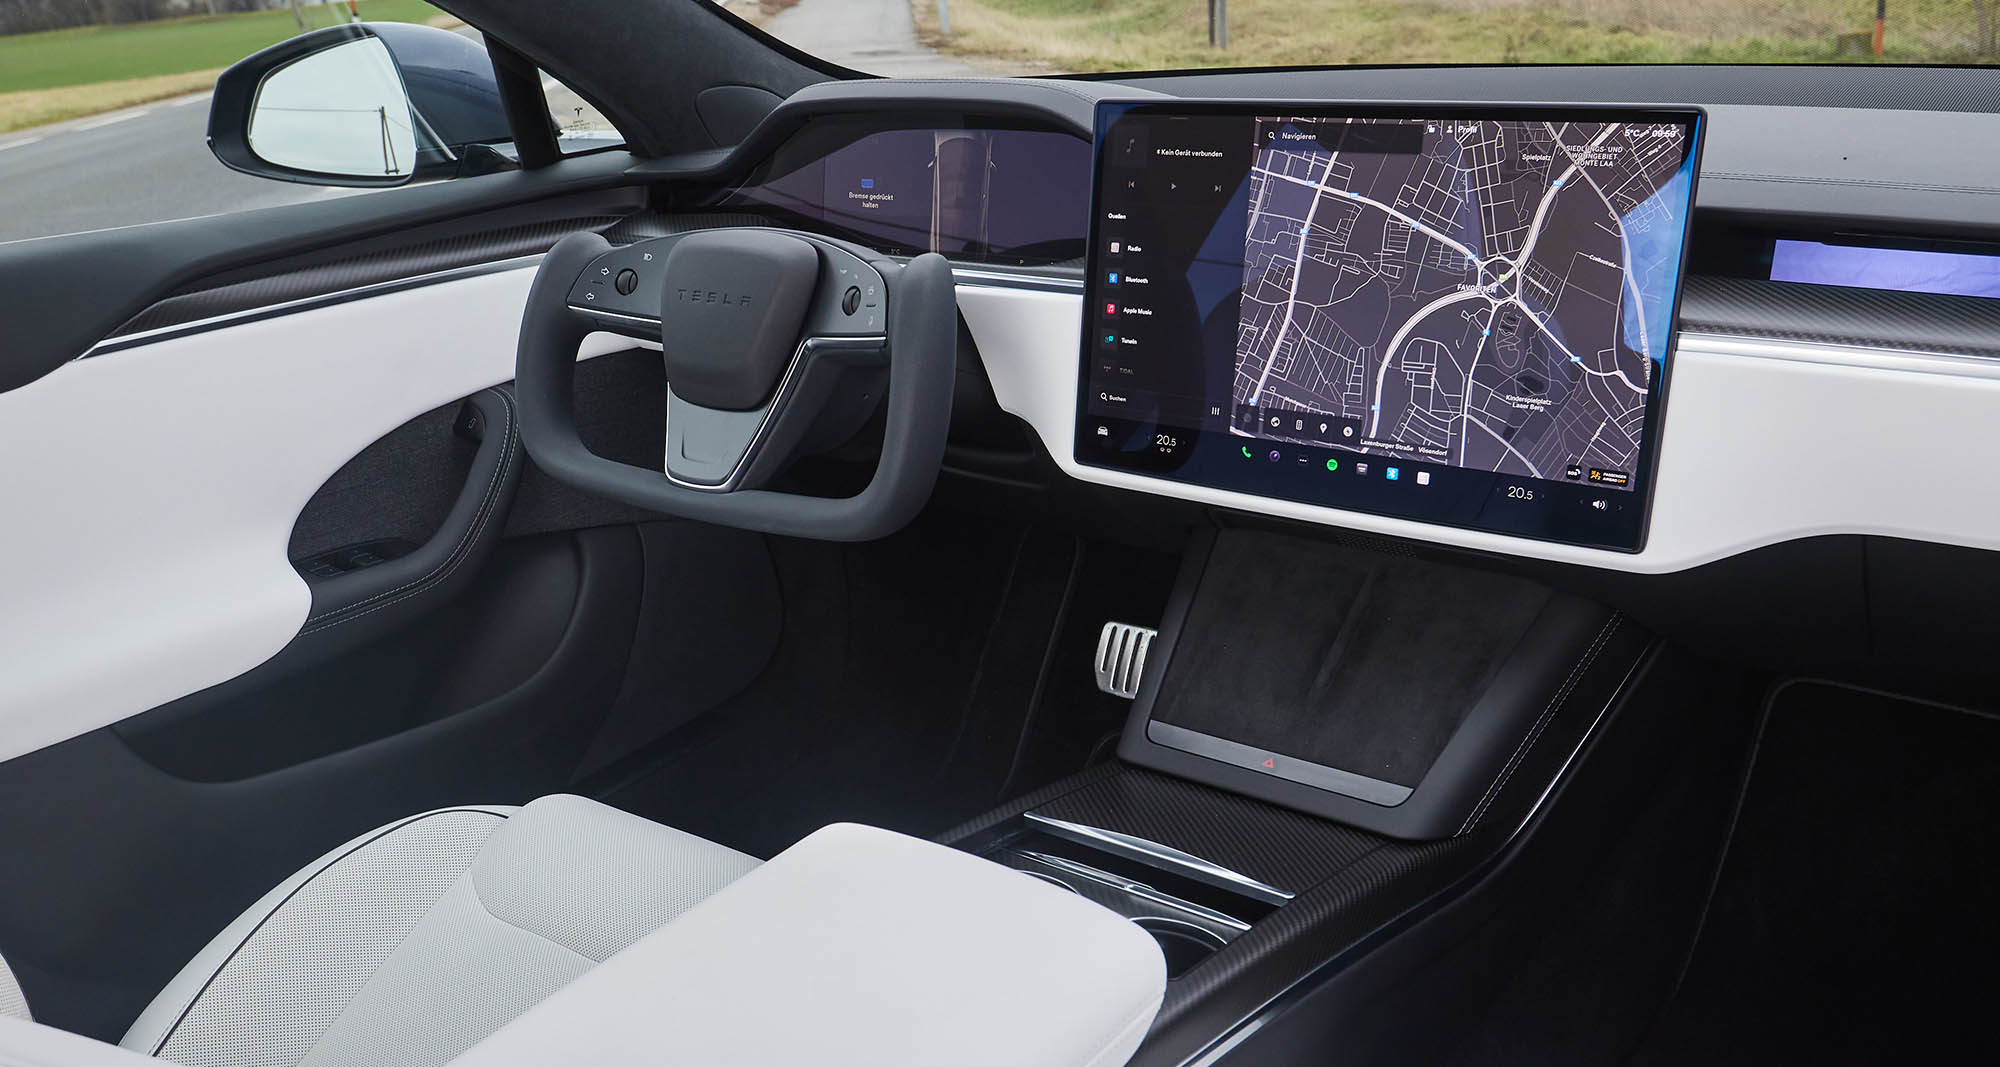 Tesla Modell S: Bilder, Preise und technische Daten (2013) @